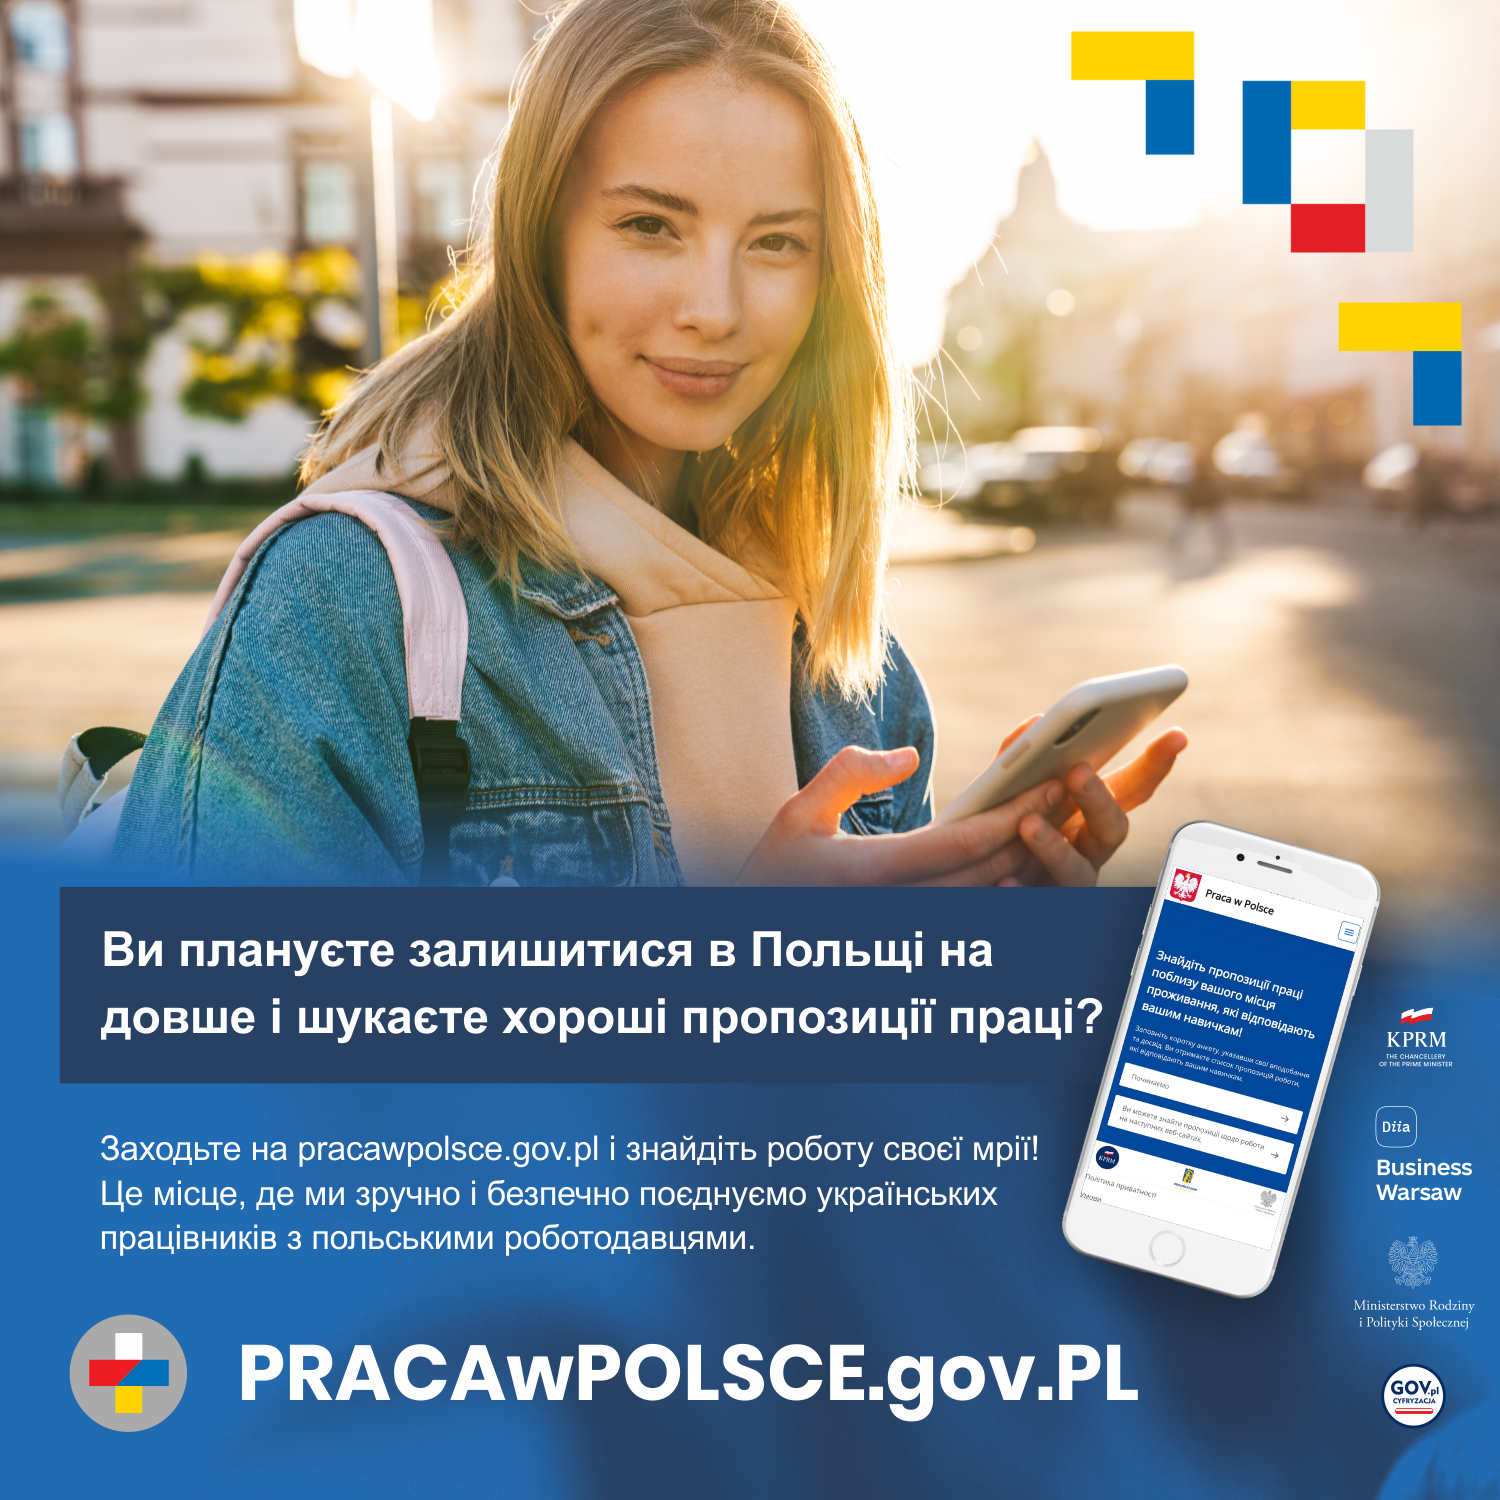 Plakat przedstawiający uśmiechniętą kobietę w kurtce typu jeans z przewieszonym plecakiem w kolorze delikatnego różu na tle małego miasta skąpanego w porannym słońcu. Kobieta w rękach trzyma smartfon, przy użyciu którego wyszukuje informacje. W prawym górnym rogu znajdują się logotypy portalu w kolorach flag Polski i Ukrainy. Pod zdjęciem znajduje się tekst w języku ukraińskim zachęcający do korzystania z nowej platformy dla obywateli Ukrainy, szukających pracy w Polskce - www.pracawpolsce.gov.pl. Obok tekstu znajduję się obrys smartfonu z otwartą stroną tejże platformy. Po prawej stronie smartfonu znajdują się logotypy Kancelarii Prezesa Rady Ministrów, Diia Business Warsaw, Ministerstwa Rodziny i Polityki Społecznej, Ministerstwa Cyfryzacji. Pod tekstem znajduje się w wskazanie na adres strony www.pracawpolsce.gov.pl